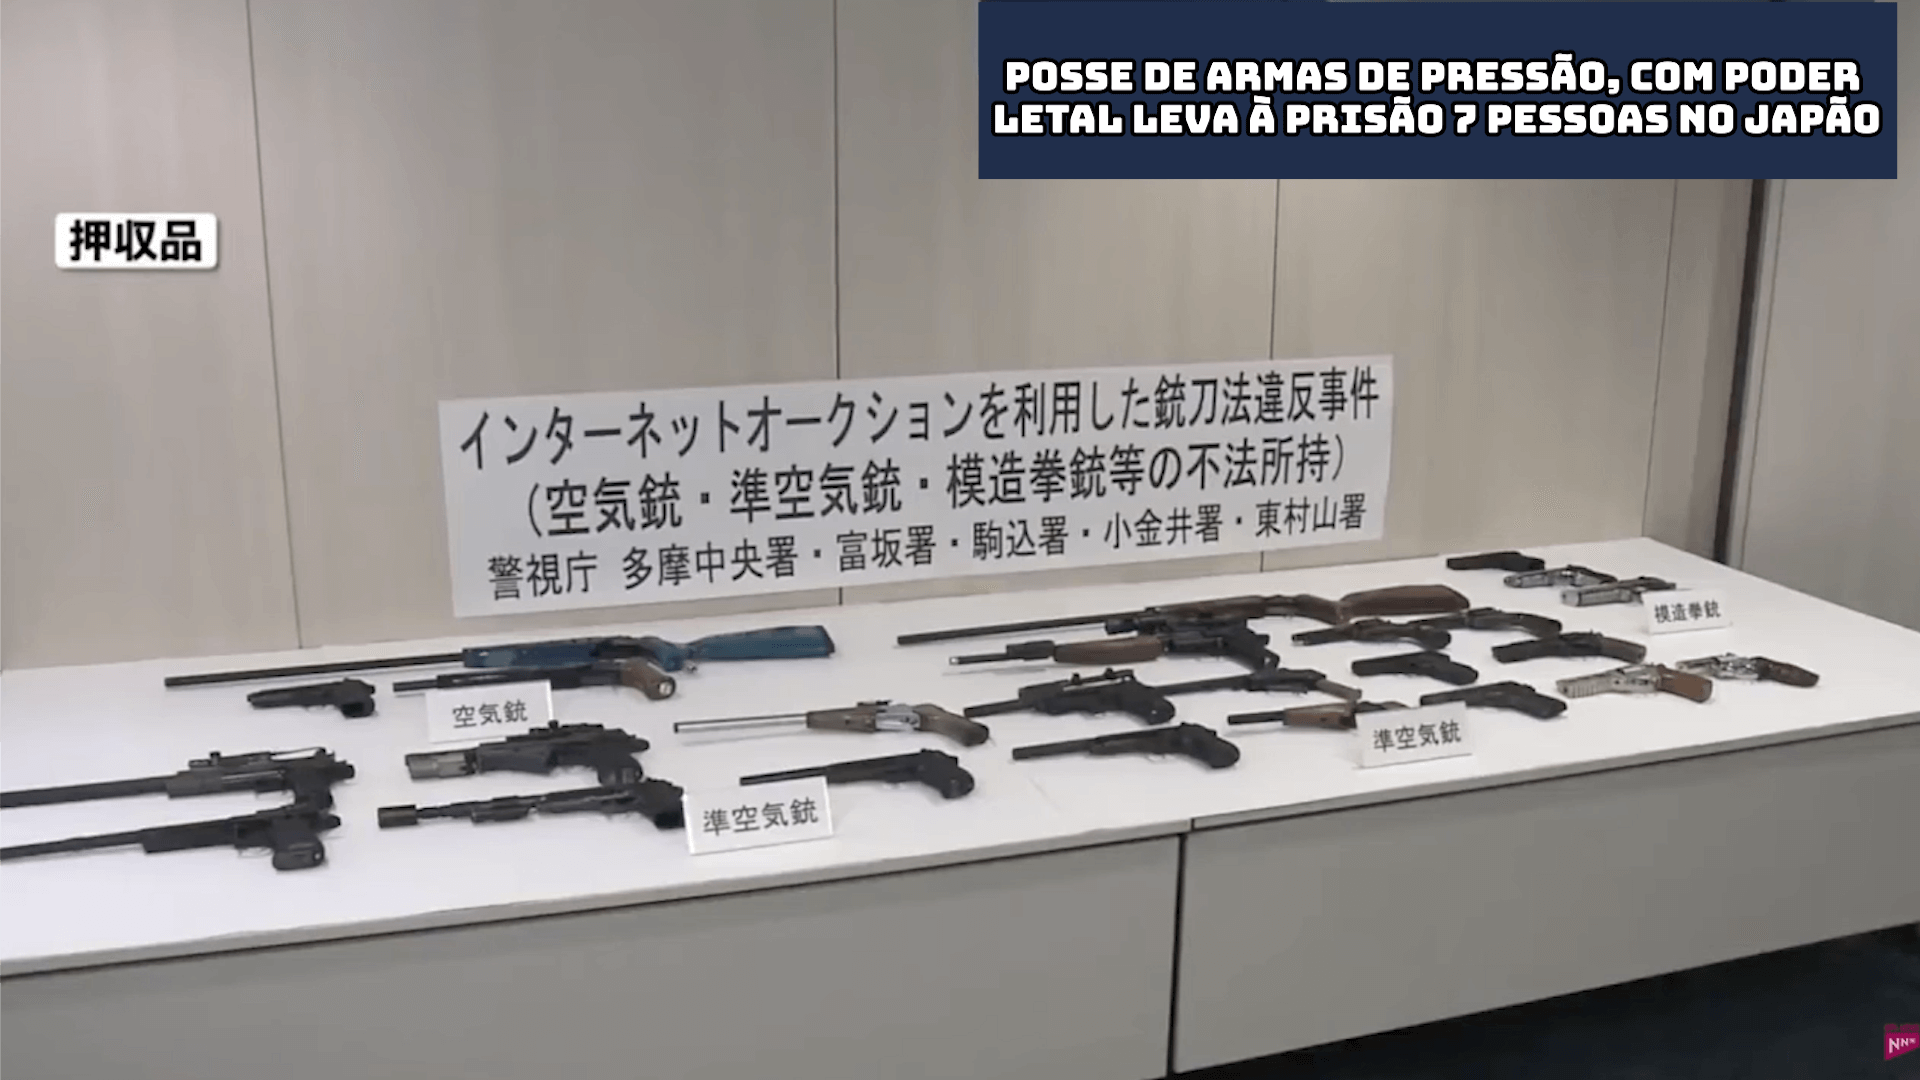 Posse de armas de pressão, com poder letal leva à prisão 7 pessoas no Japão